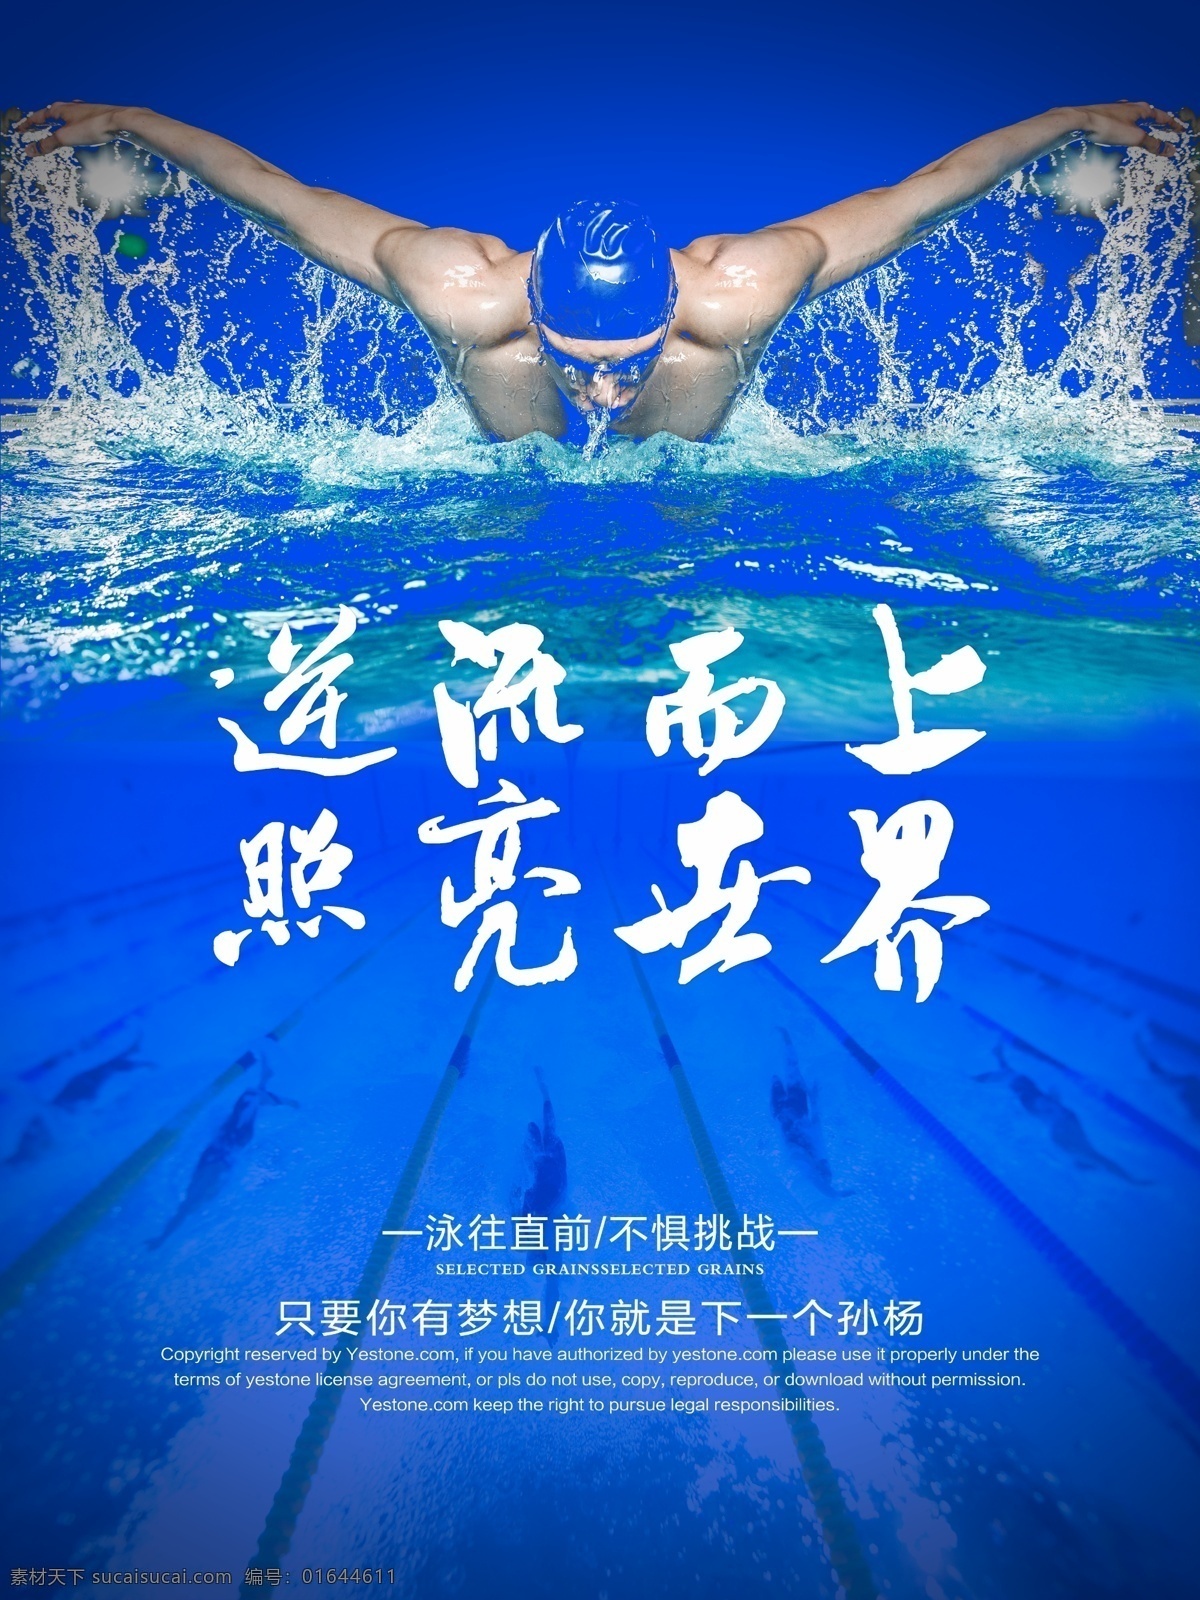 游泳 逆流 上海 报 海报 矢量 模板下载 游泳海报 游泳培训班 悠然畅游 包学会 游泳的益处 锻炼身体 学游泳